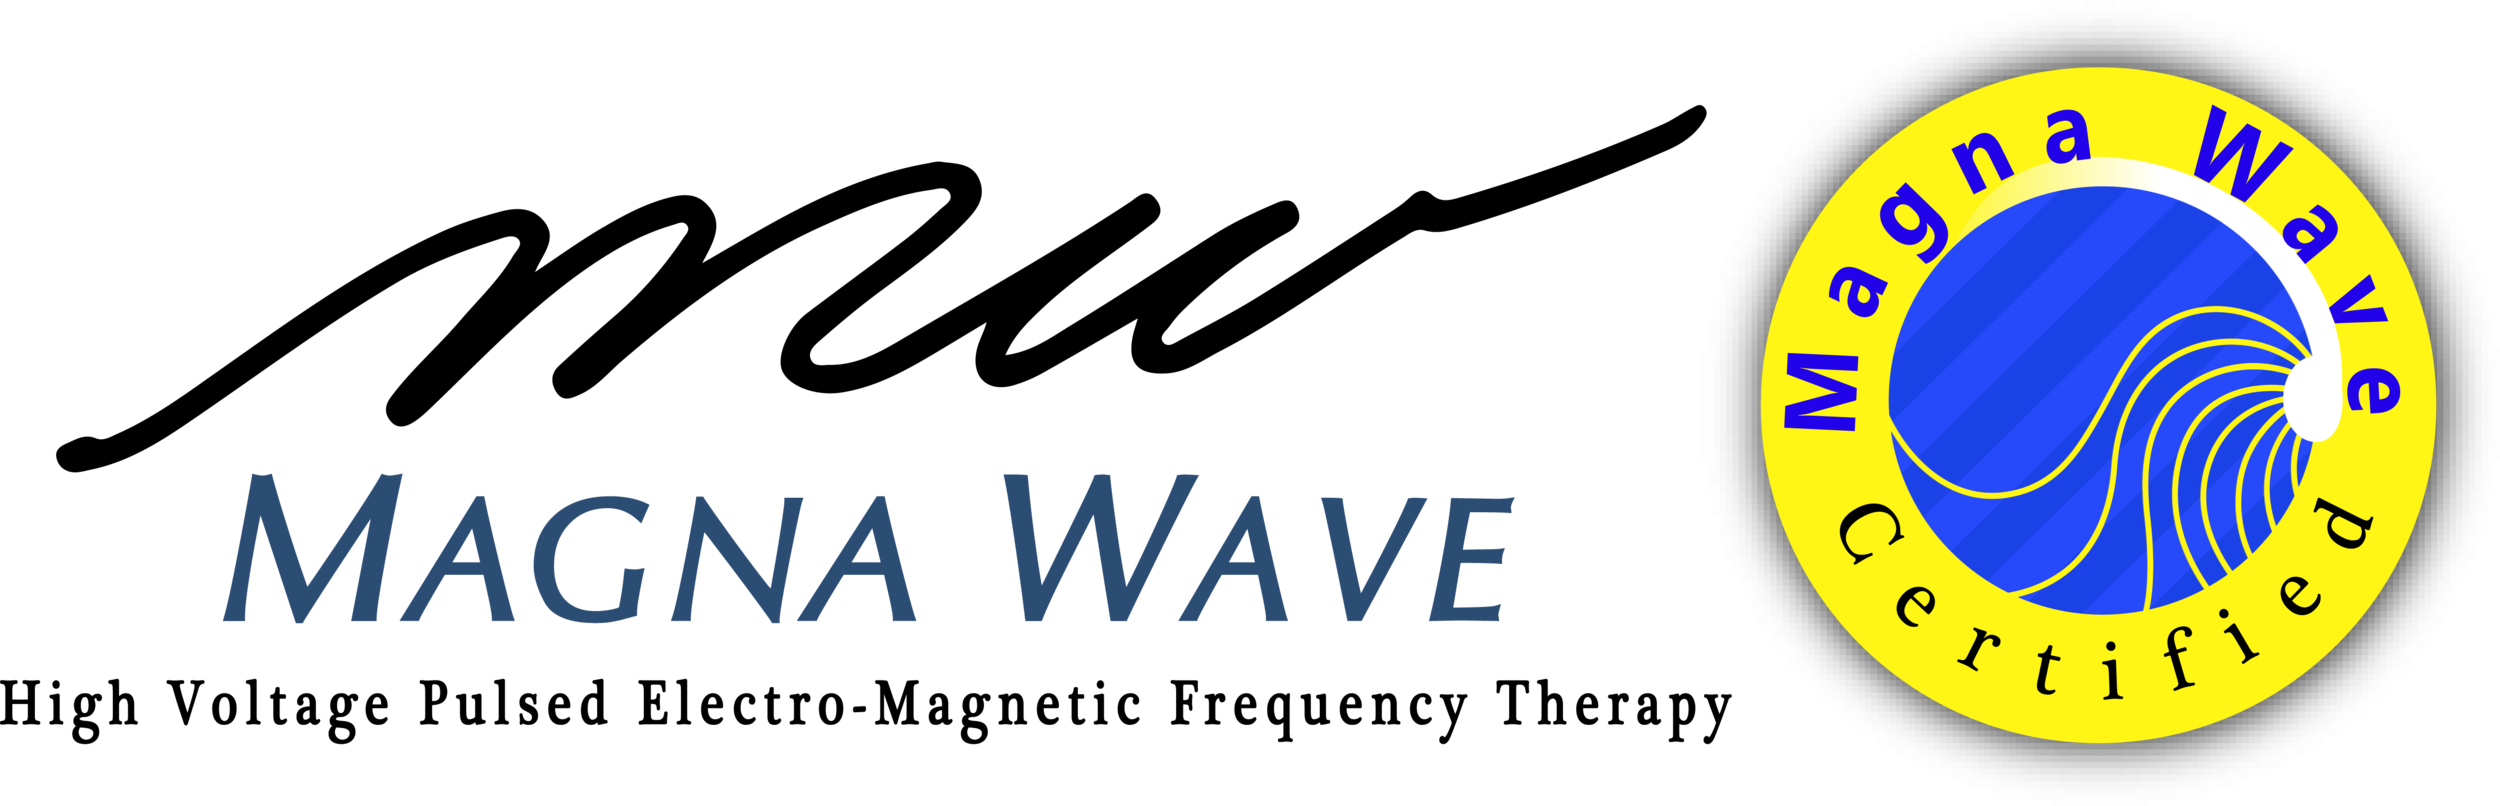 Magna Wave Logo.png